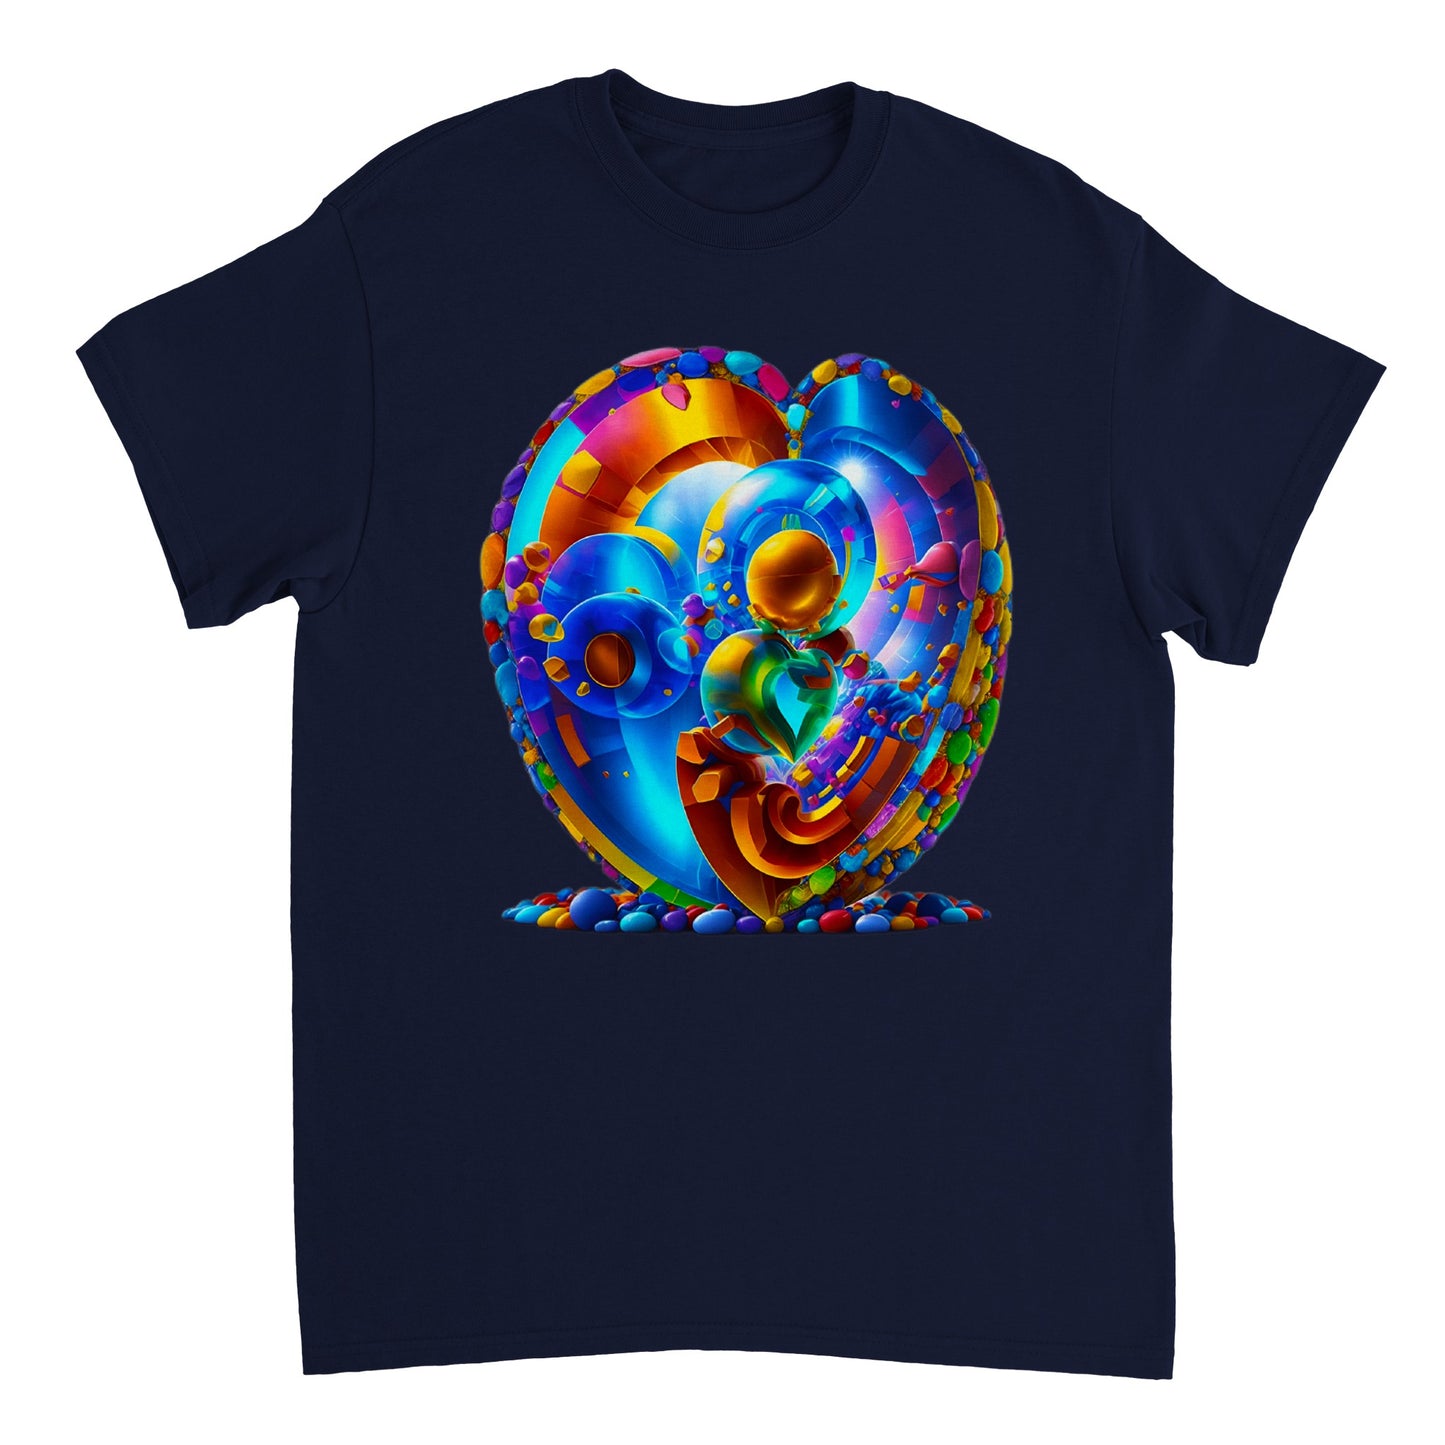 Love Heart - Heavyweight Unisex Crewneck T-shirt 9